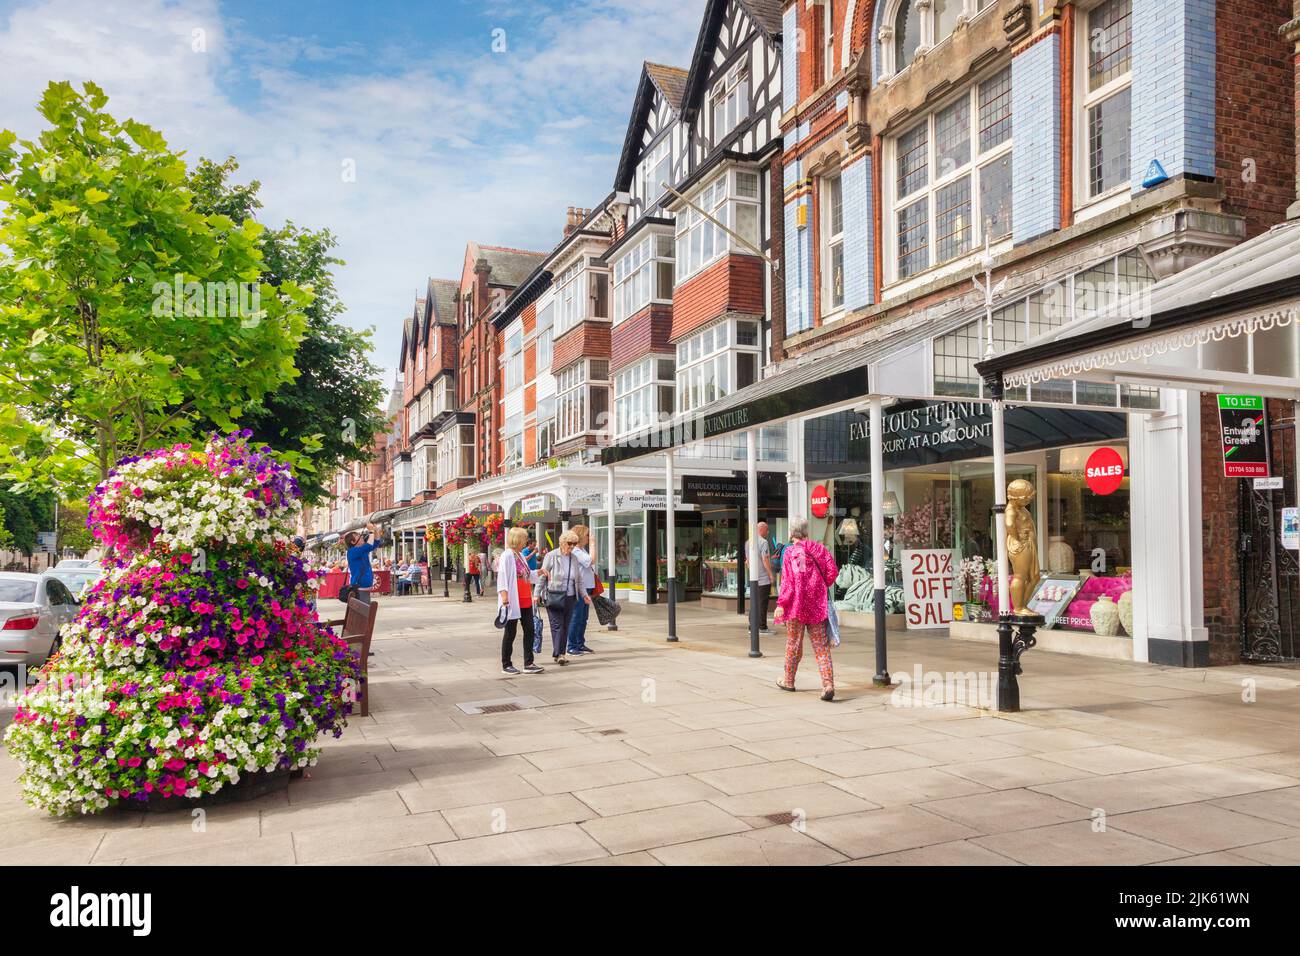 14 luglio 2019: Southport, Merseyside, UK - Donne che acquistano in Lord Street, la strada principale dello shopping della città. Foto Stock